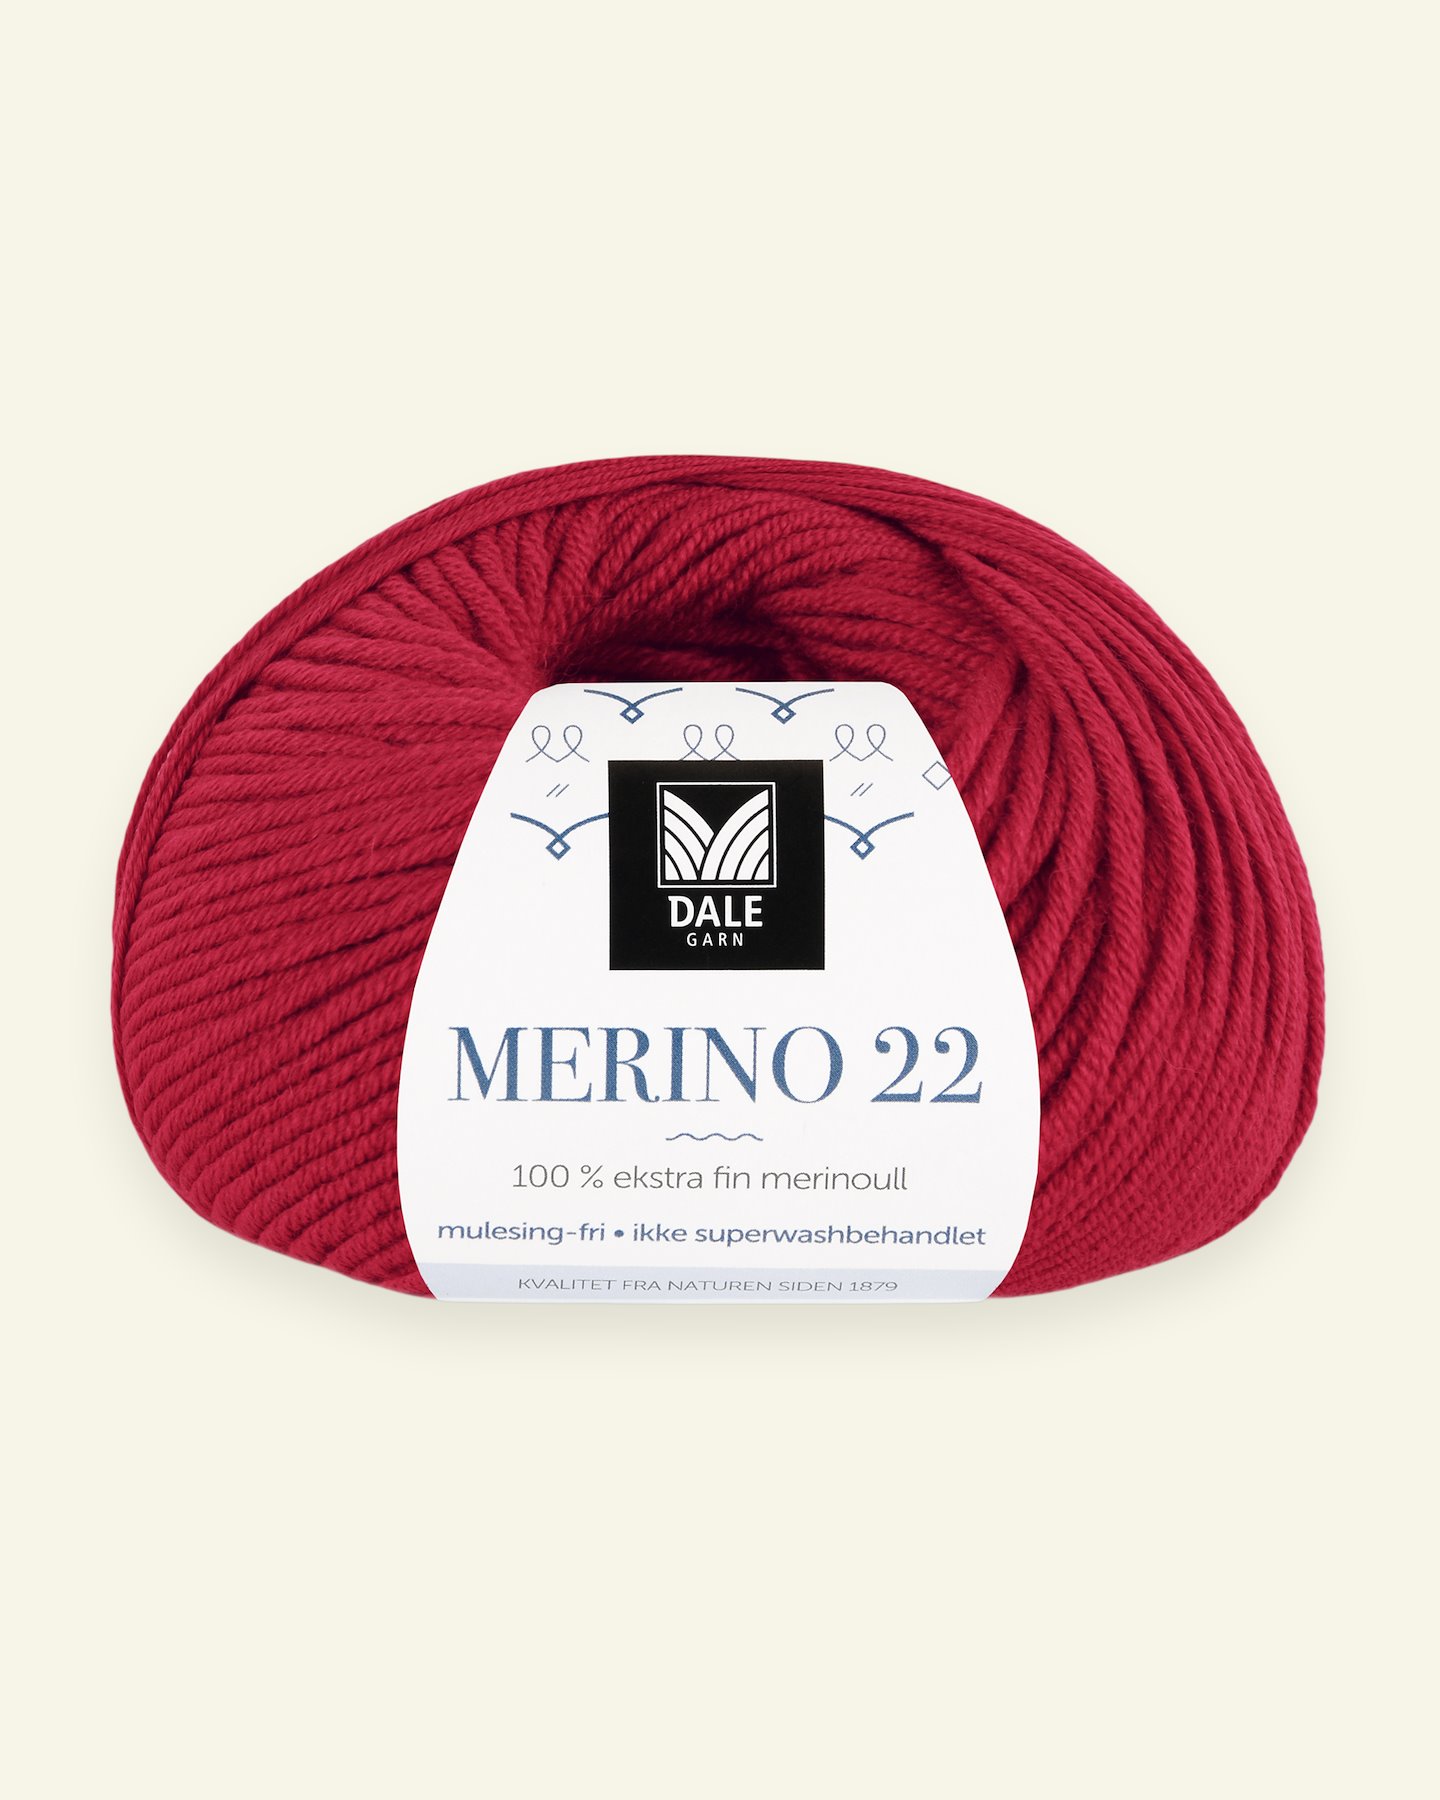 Dale Garn, 100% extra fine merino wool yarn, "Merino 22", red 90000384_pack